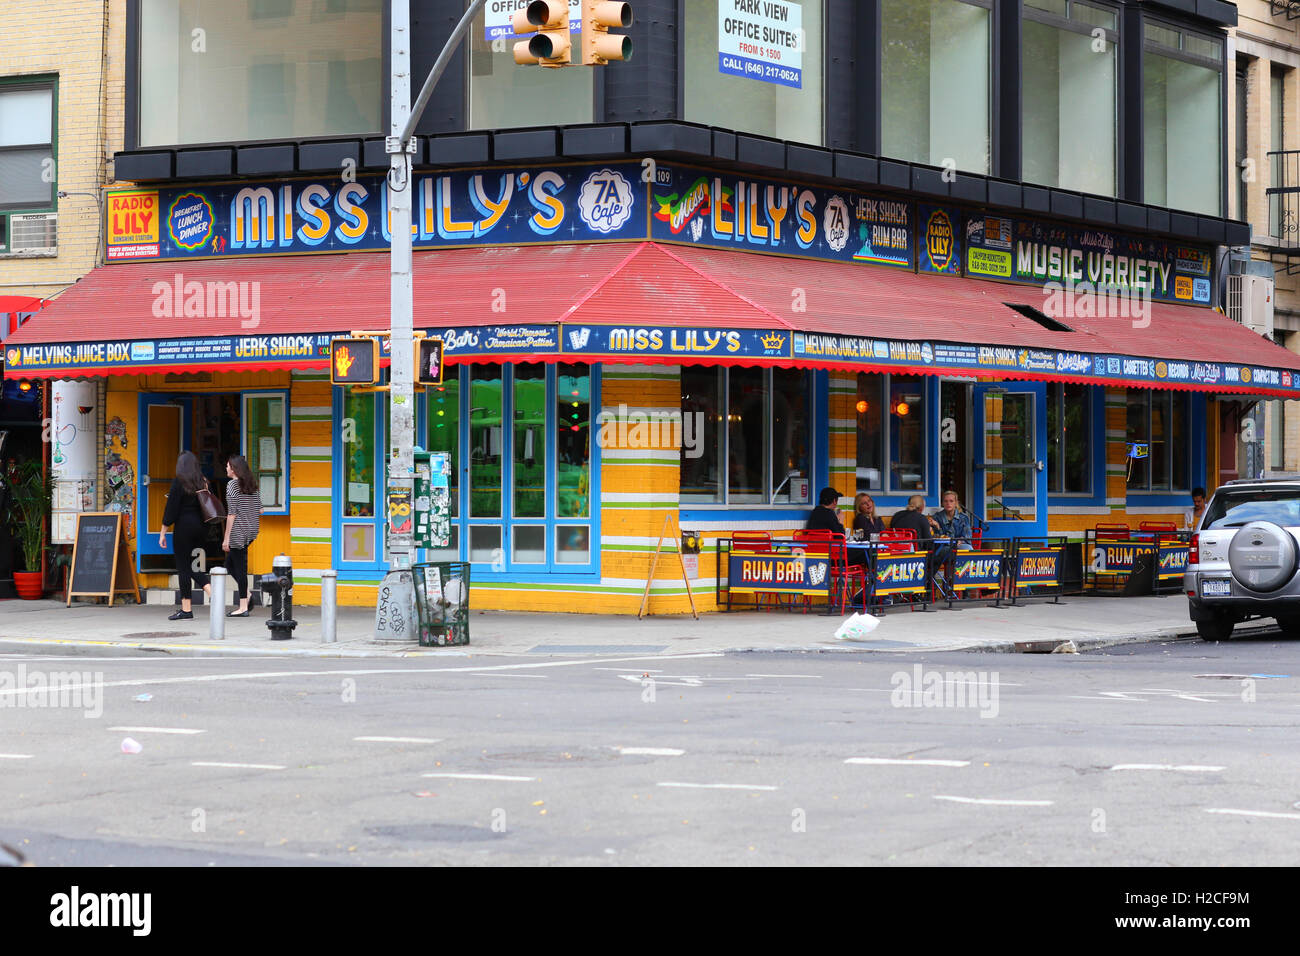 Miss Lily's 7A Cafe, 109 Avenue A, New York, NY. aussen Storefront auf ein jamaikanisches Restaurant im Stadtteil East Village in Manhattan. Stockfoto